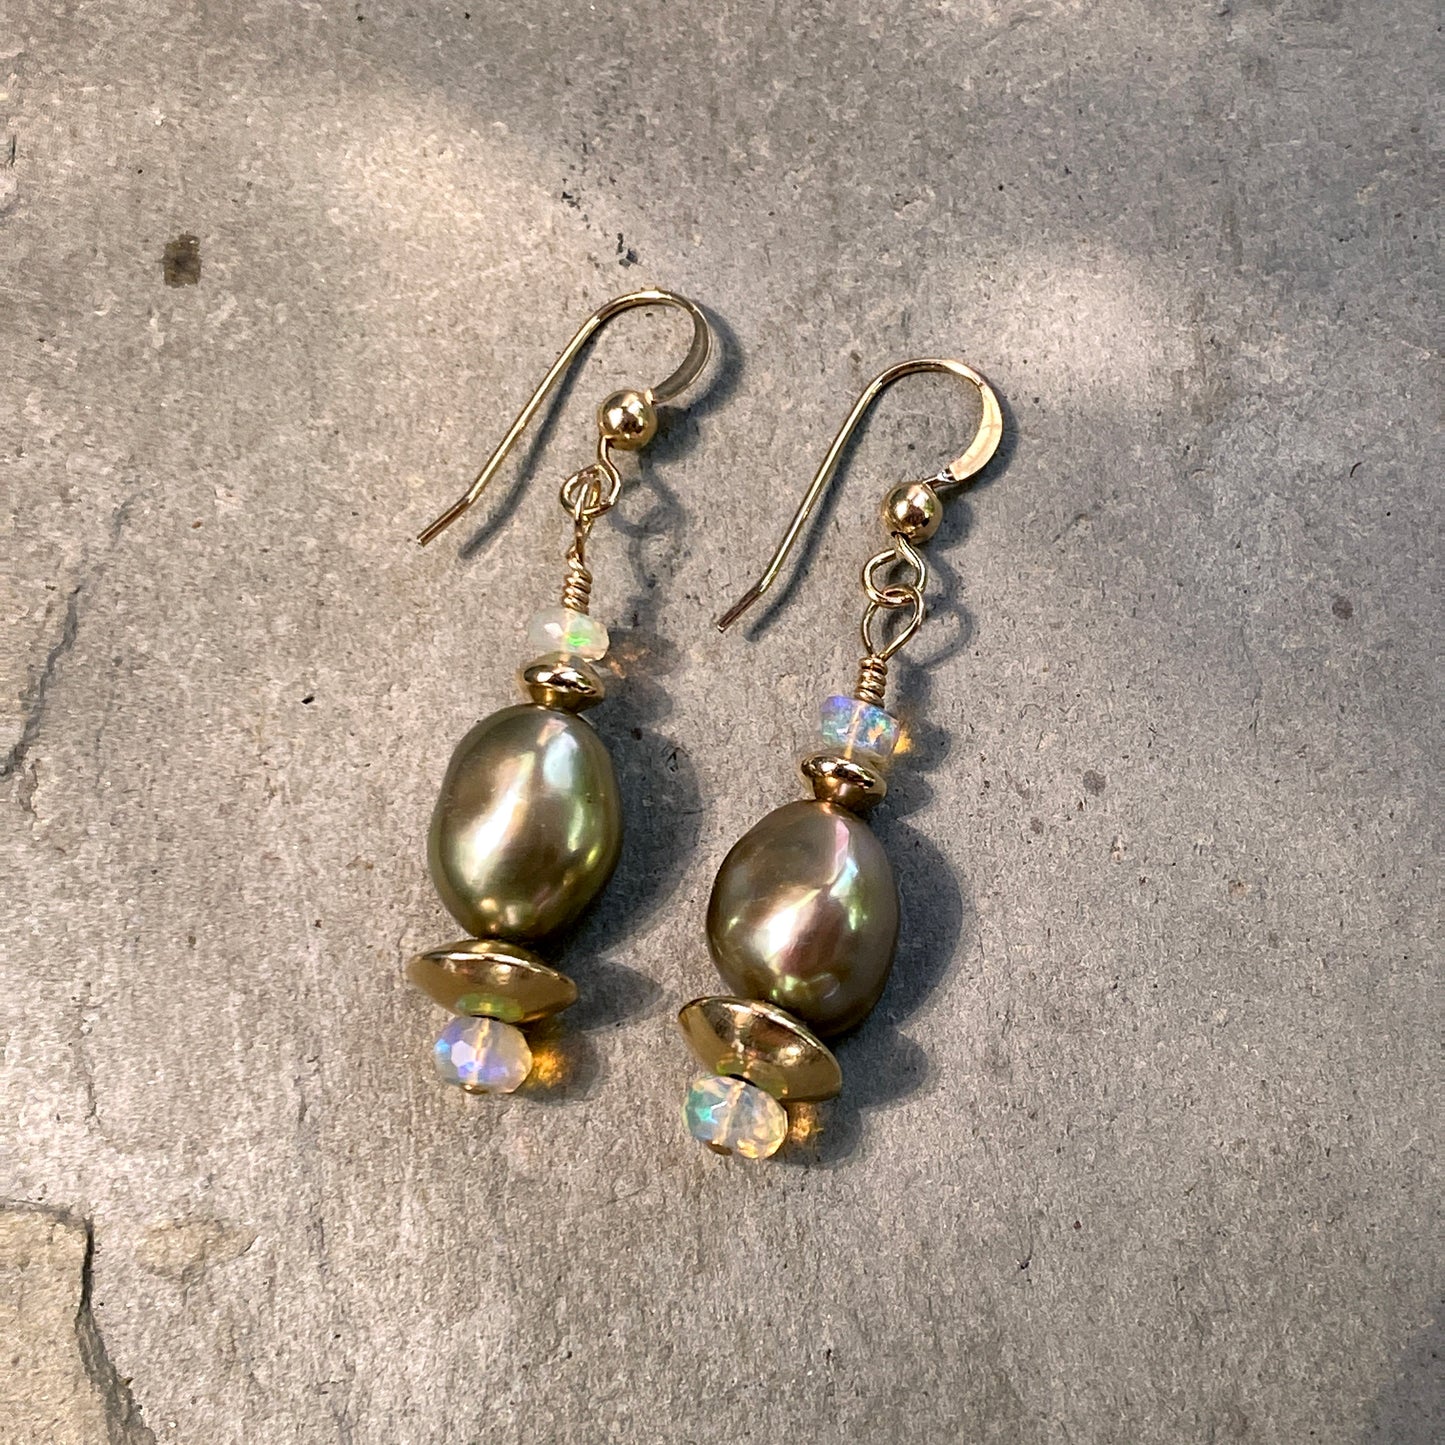 Freshwater Pearls, Australian Opal Gemstones, 14 Kt Gf Earrings